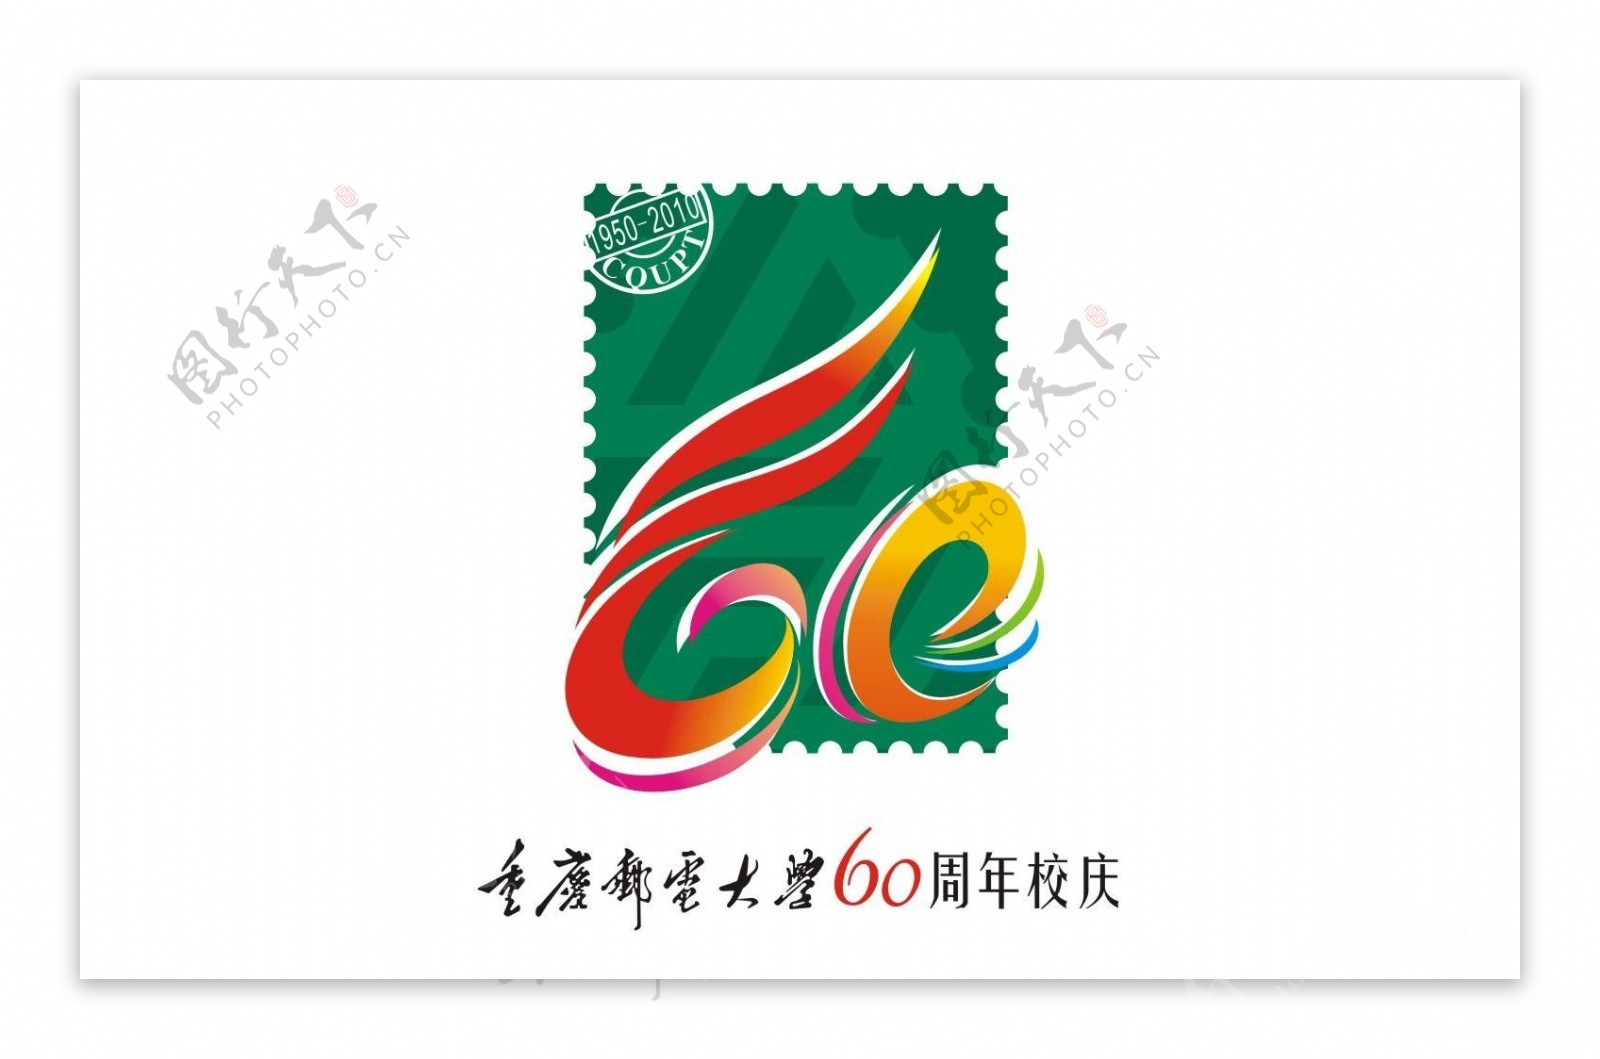 重庆邮电大学六十周年校庆图标